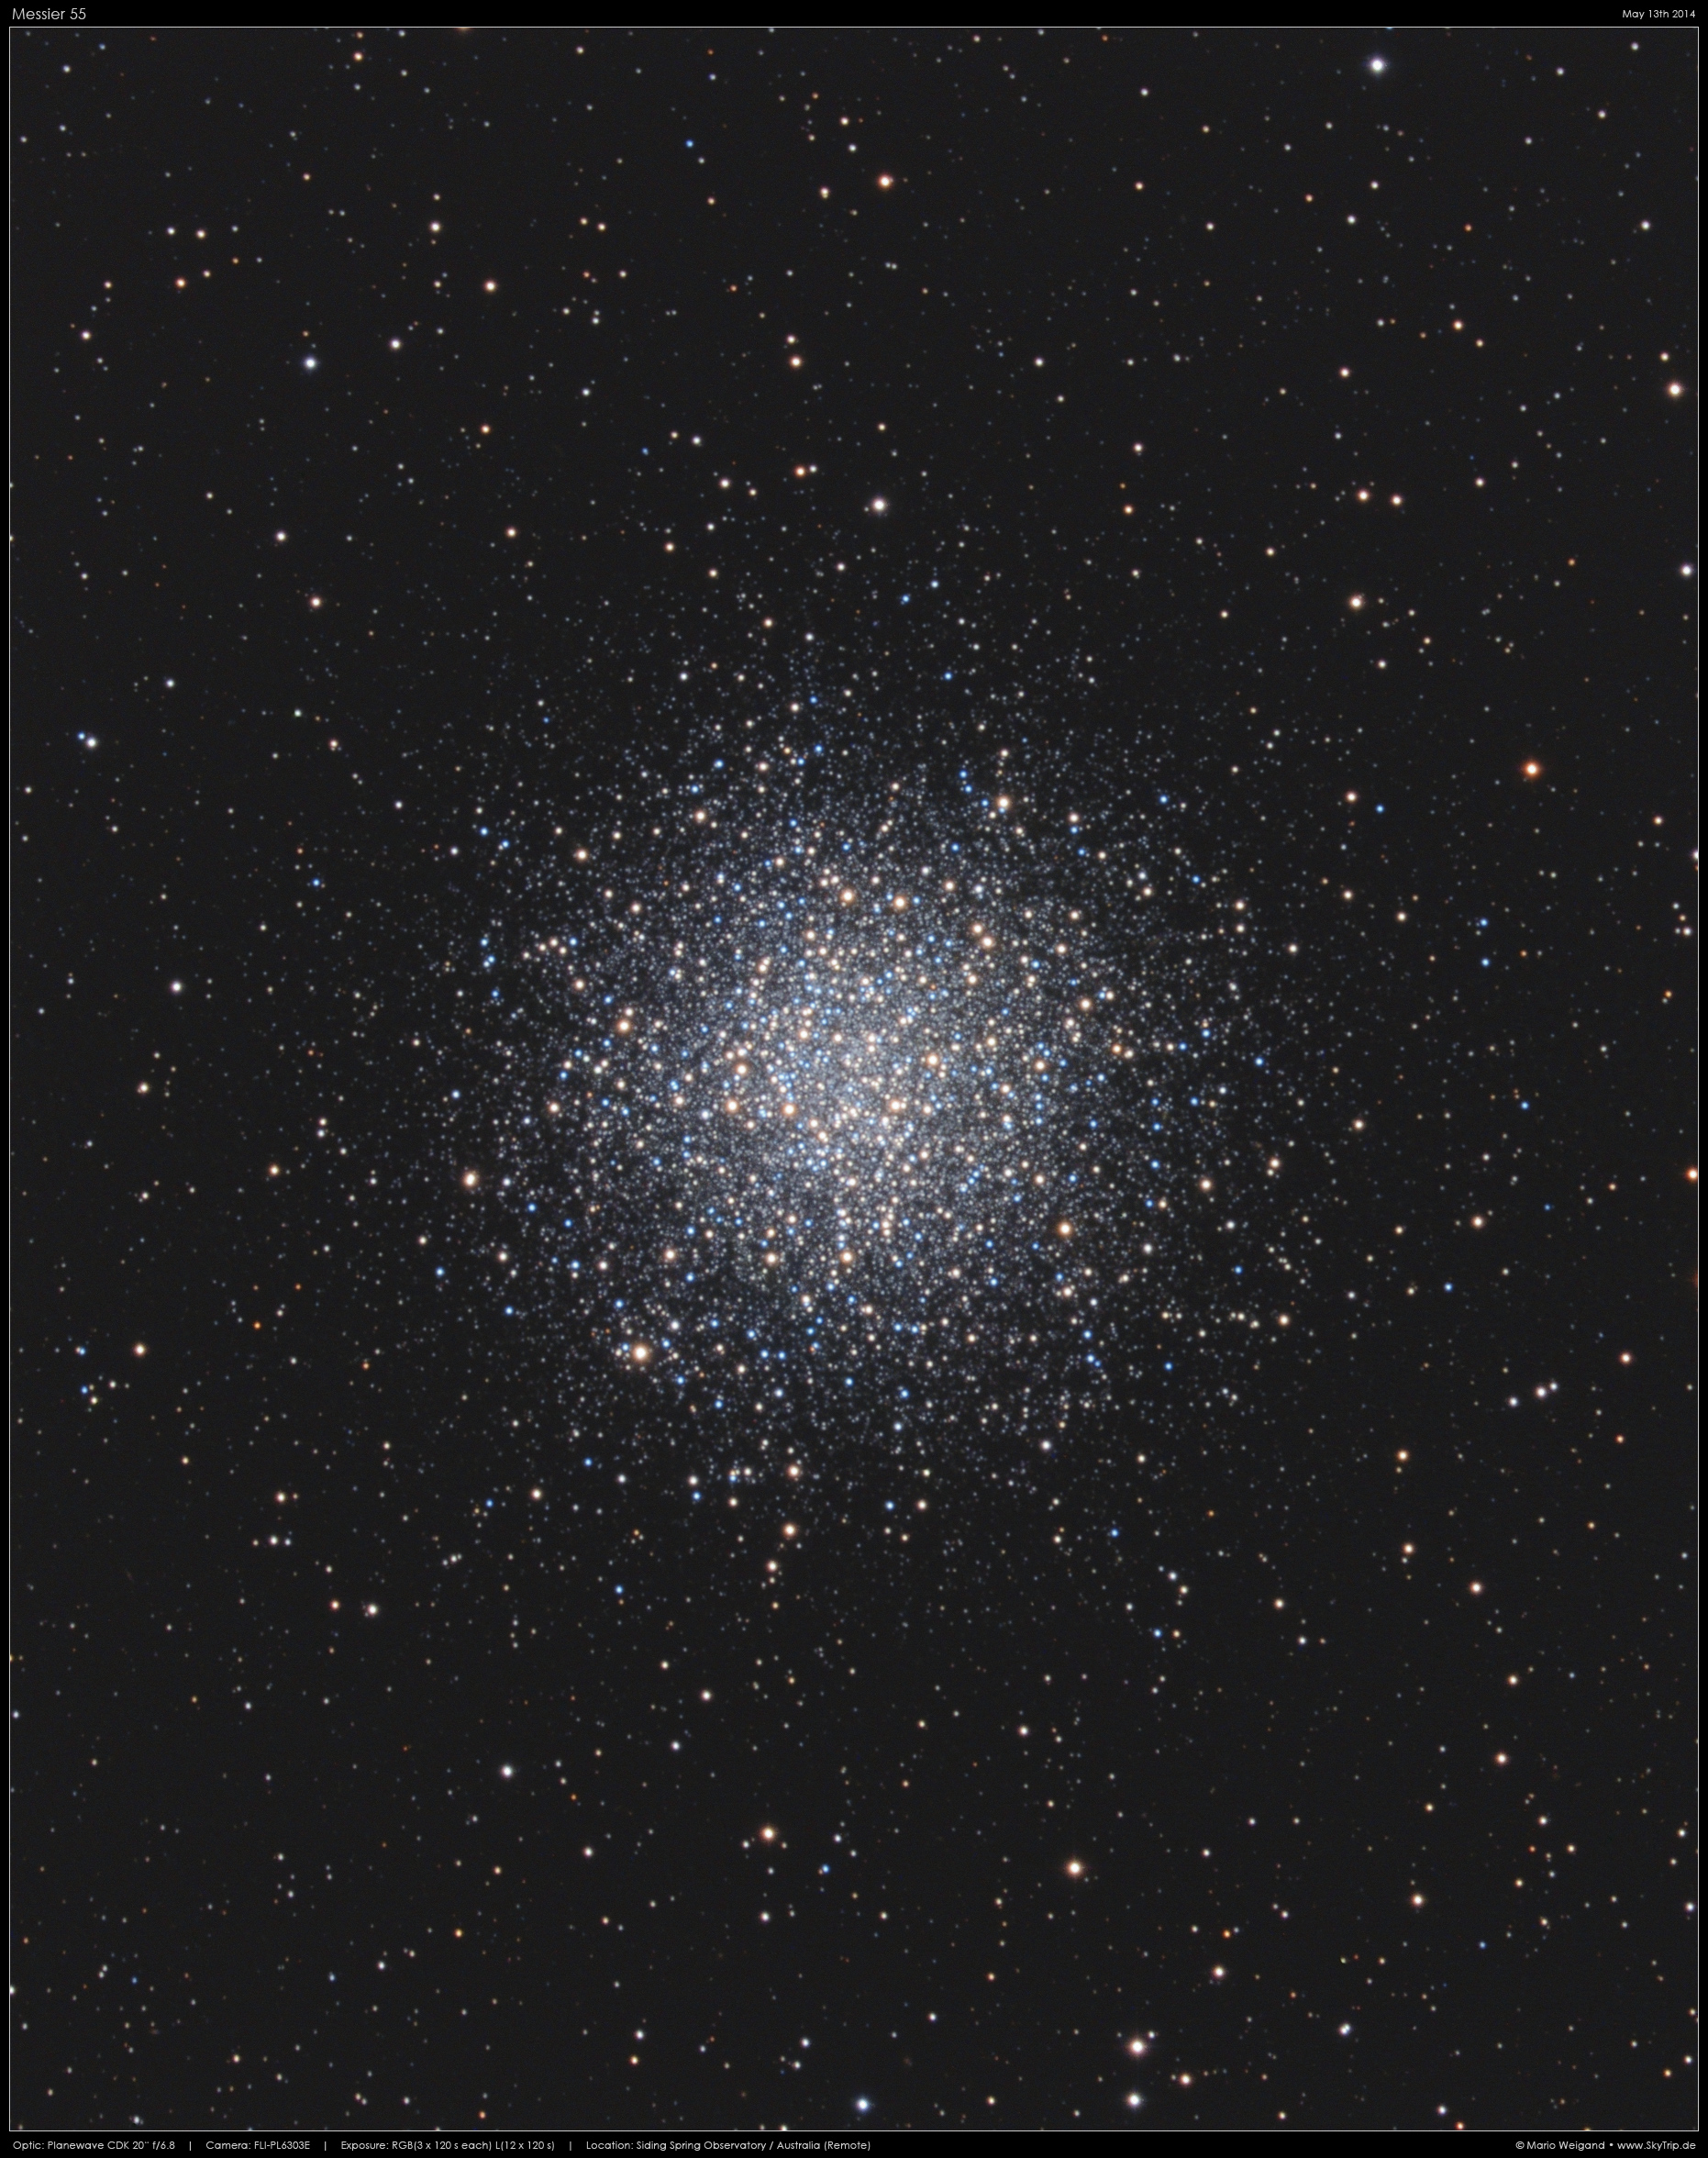 Kugelsternhaufen Messier 55